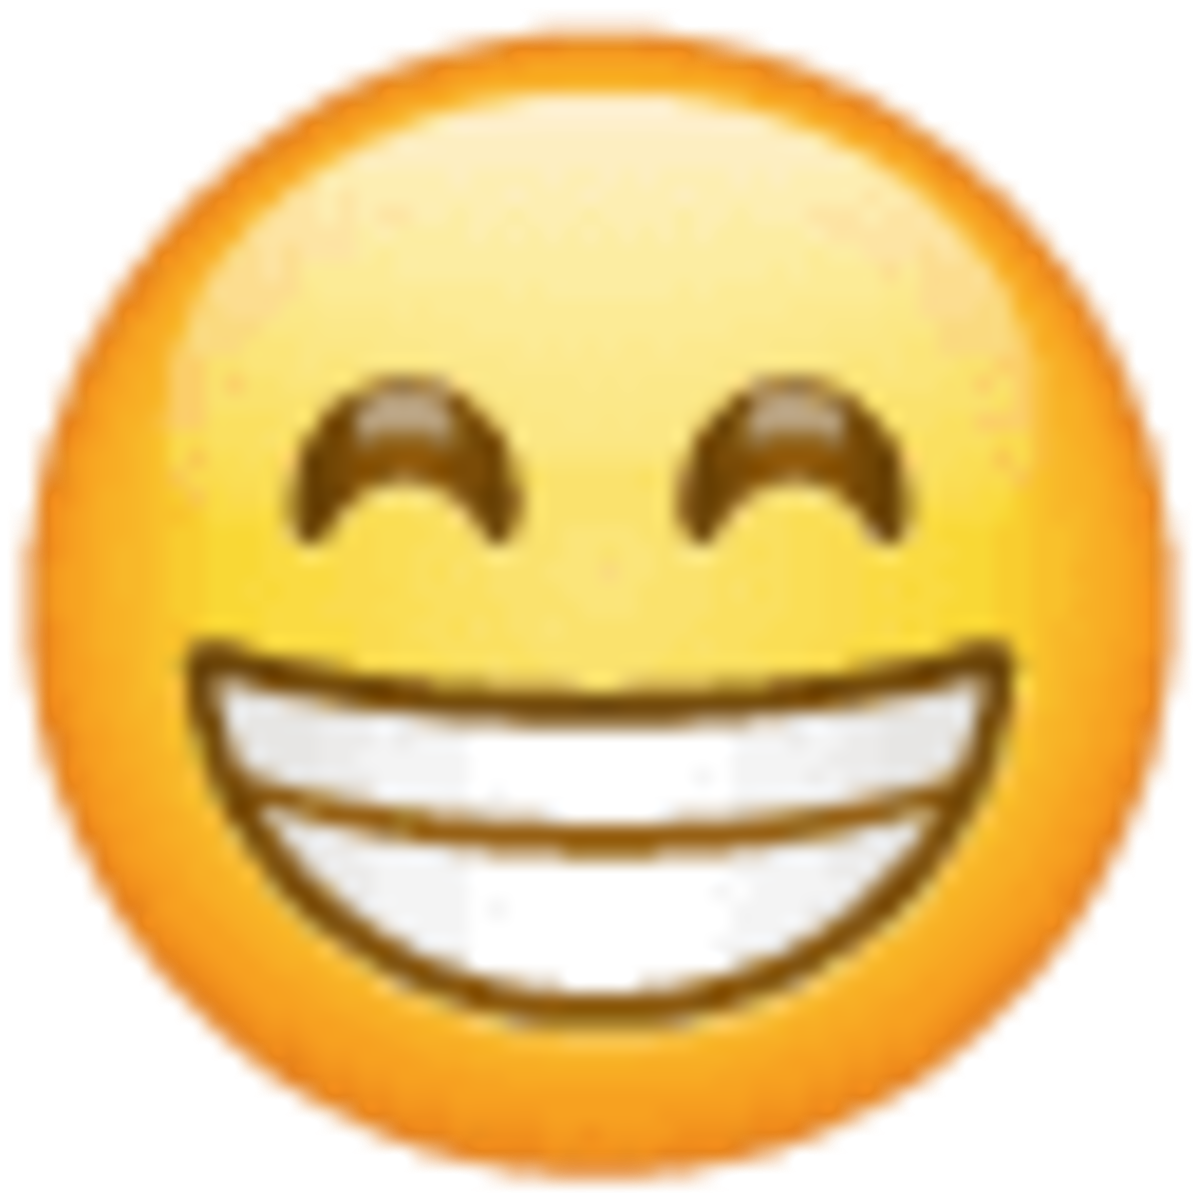 Emoji U+1f601, cara con sonrisa y dientes